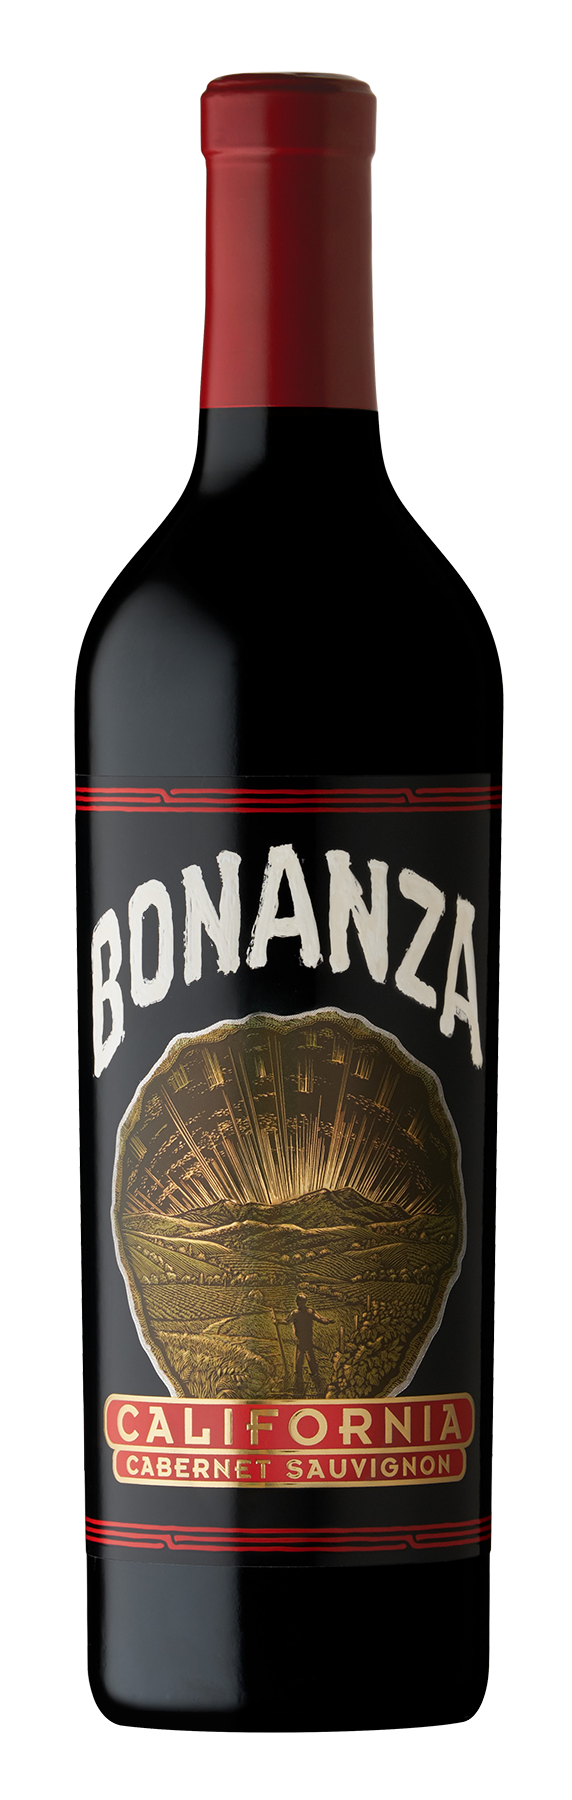 Bonanza Cabernet Sauvignon Wine